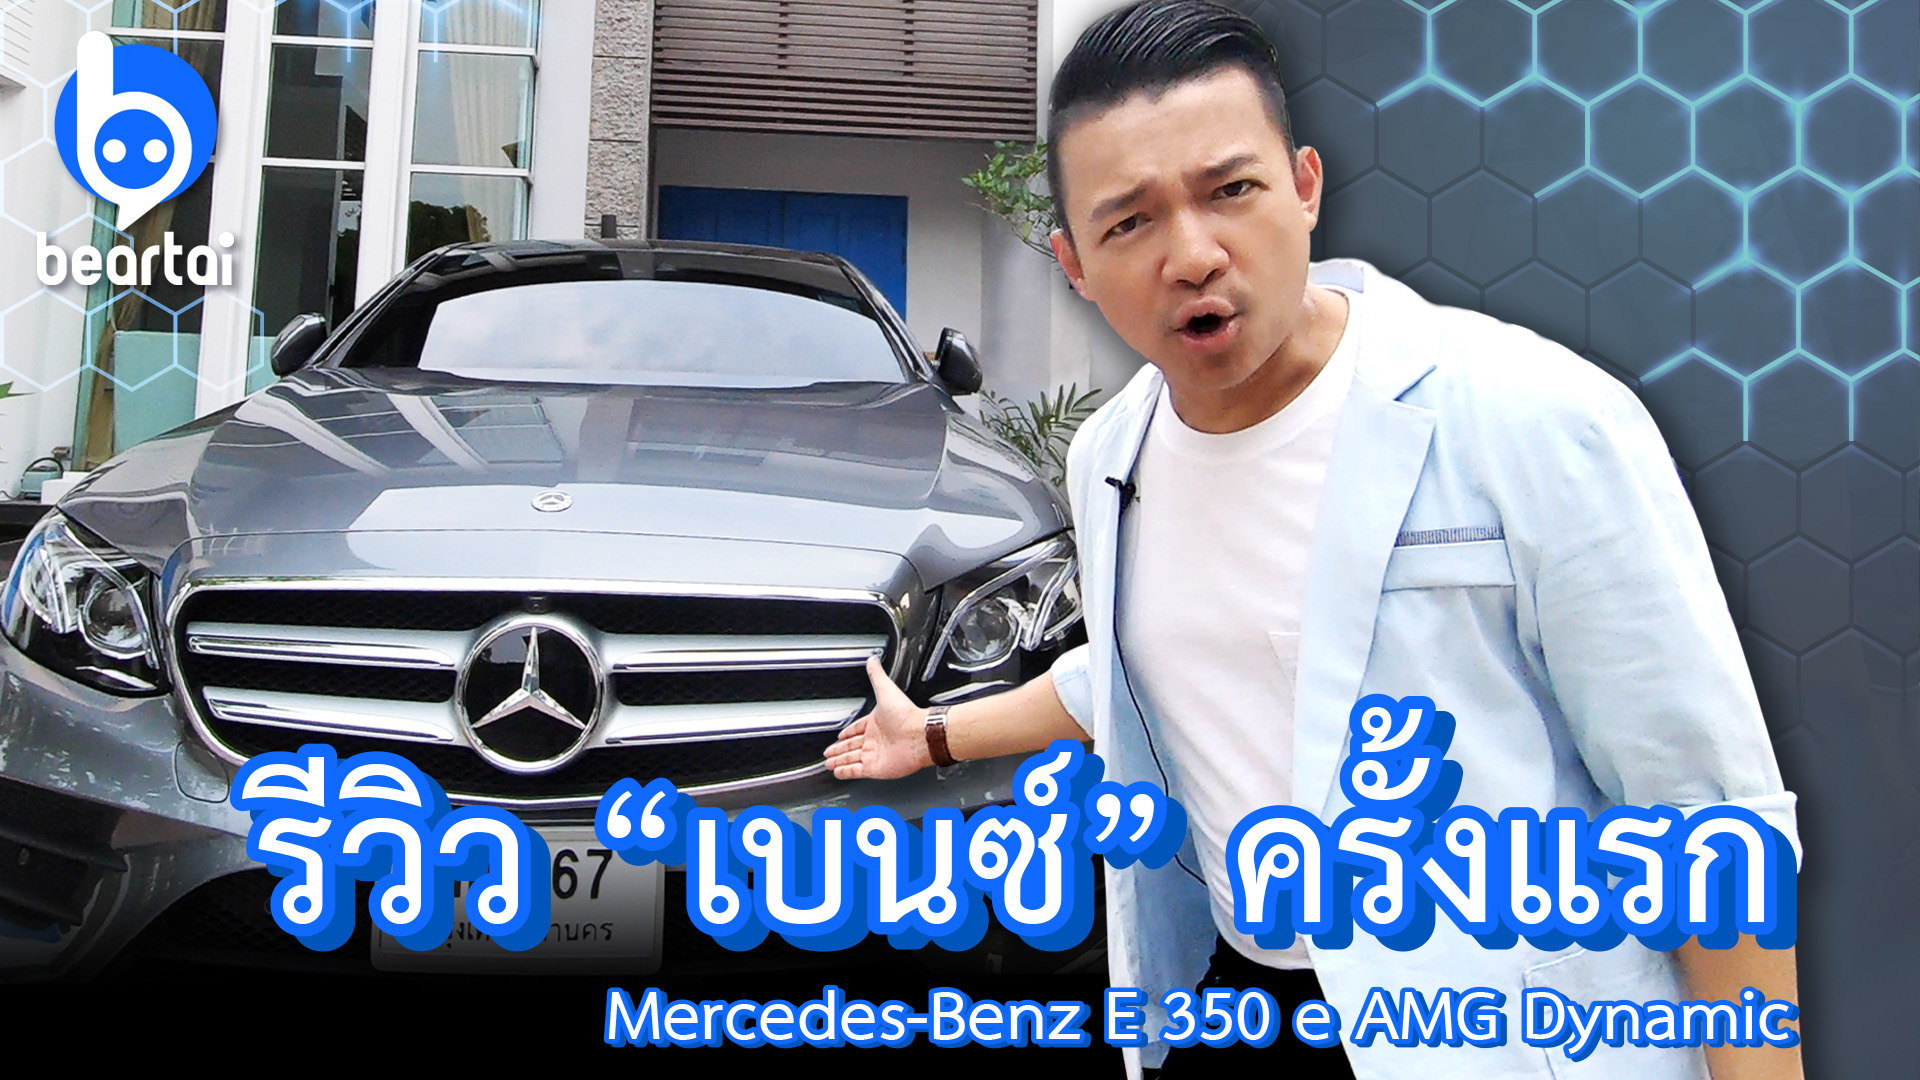 ‘หนุ่ย พงศ์สุข’ Test Drive Mercedes-Benz E 350 e AMG Dynamic ตัวท็อป “ครั้งแรก!”